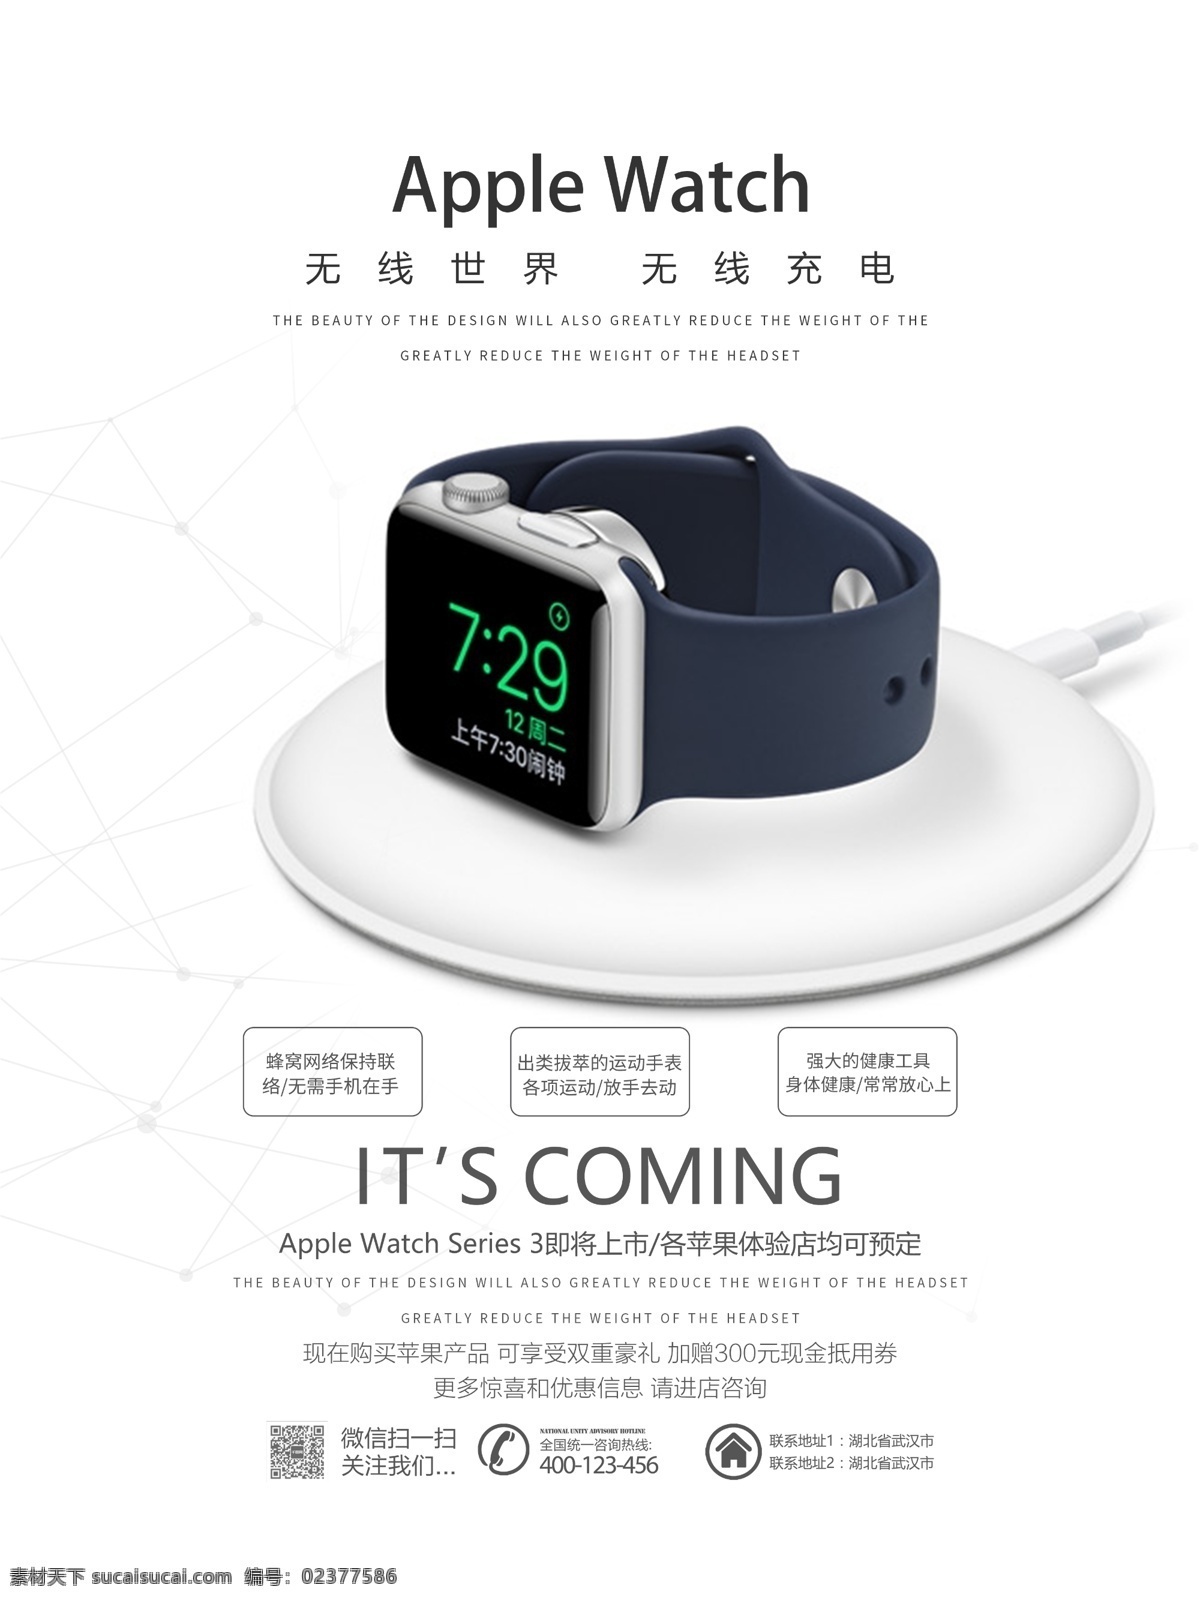 清新 简约 苹果 手表 无线 充电 卖点 宣传海报 大气 无线充电 苹果手表 apple watch iwatch 智能手表 手环 促销 宣传 海报